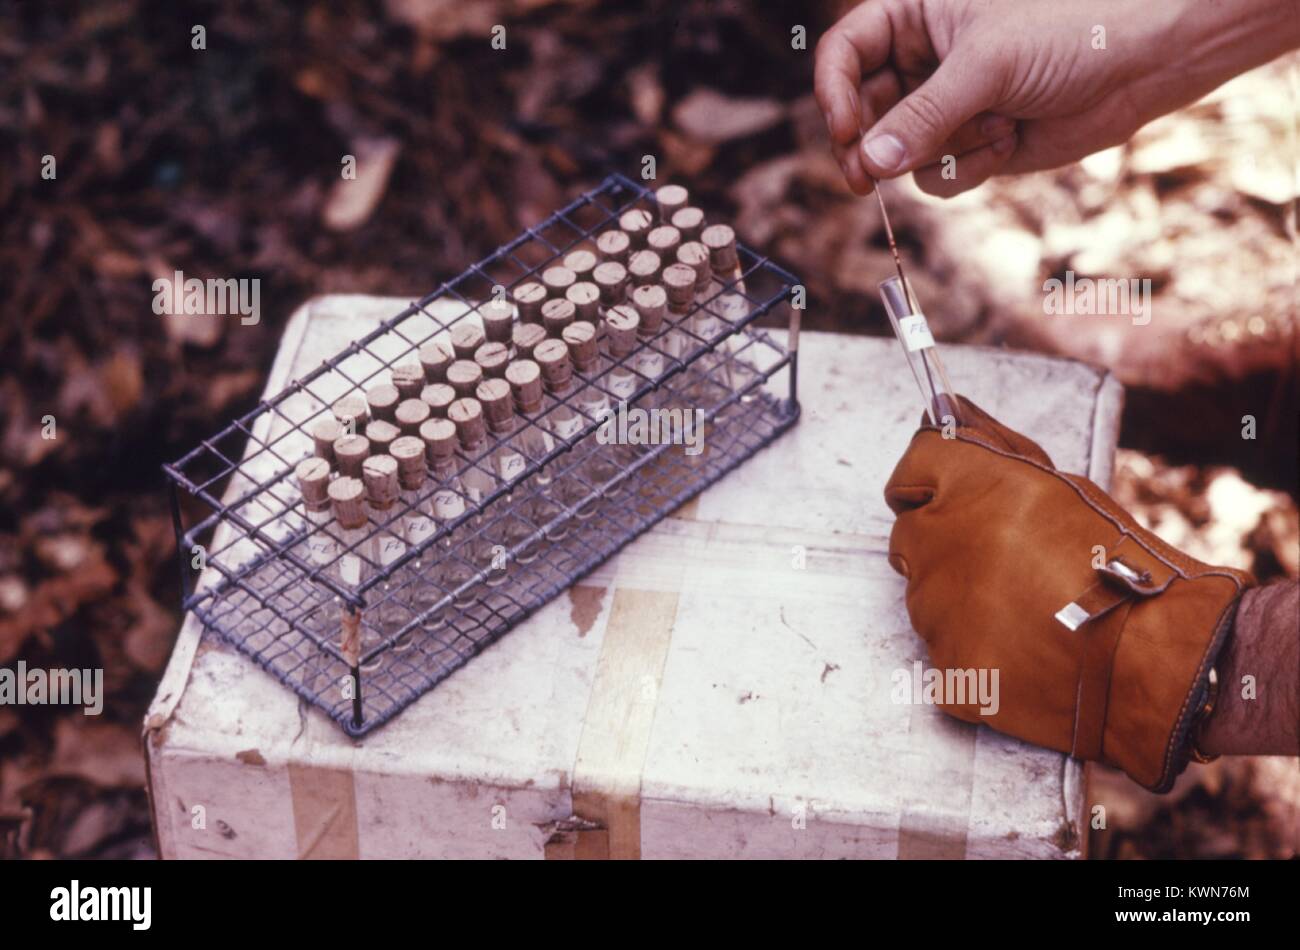 Questo campo CDC clinico è la raccolta e il trattamento di vertebrati di campioni di sangue per la successiva arbovirus studi, 1974. Questi studi di animali sono importanti per il controllo degli artropodi di agenti patogeni come l'arbovirus. Animali, come gli esseri umani possono essere infettati con un arbovirus da zanzare e altri vasi di alimentazione di vettori artropodi. Immagine cortesia CDC. Foto Stock